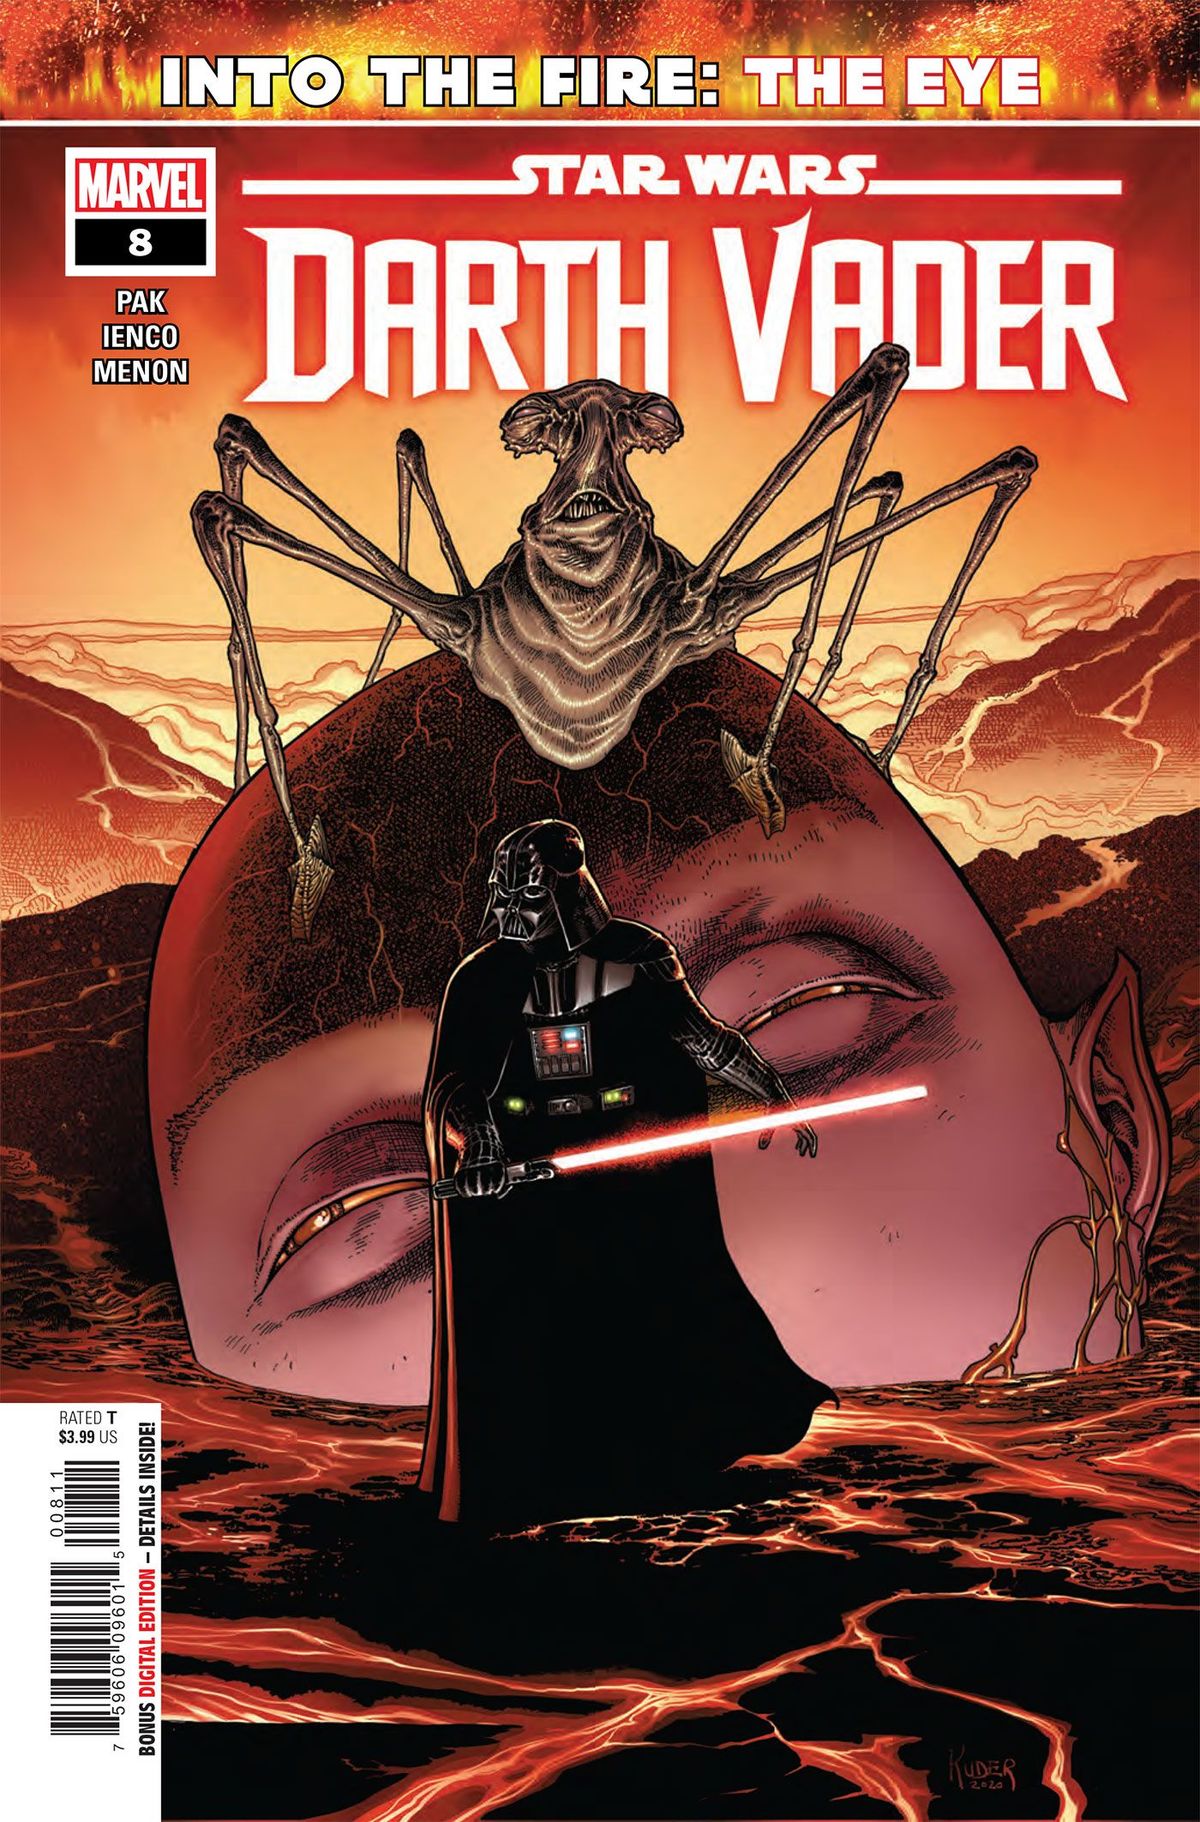 ANTEPRIMA: Star Wars: Darth Vader #8